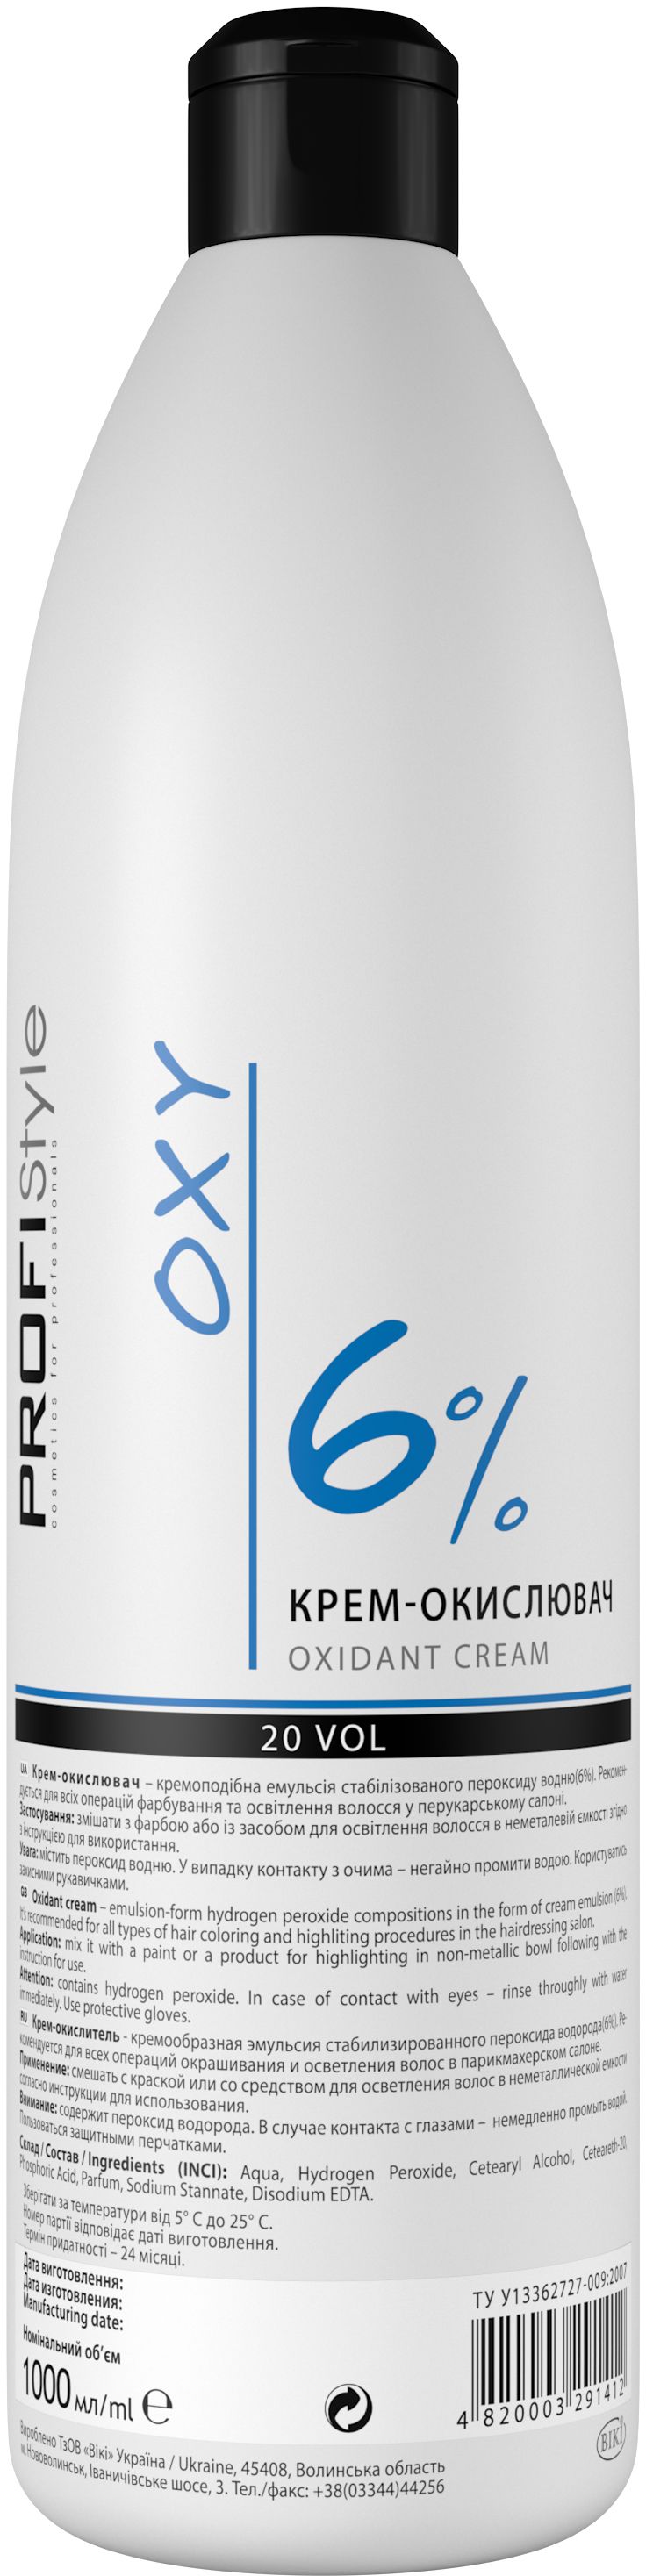 Крем-окислитель 6%